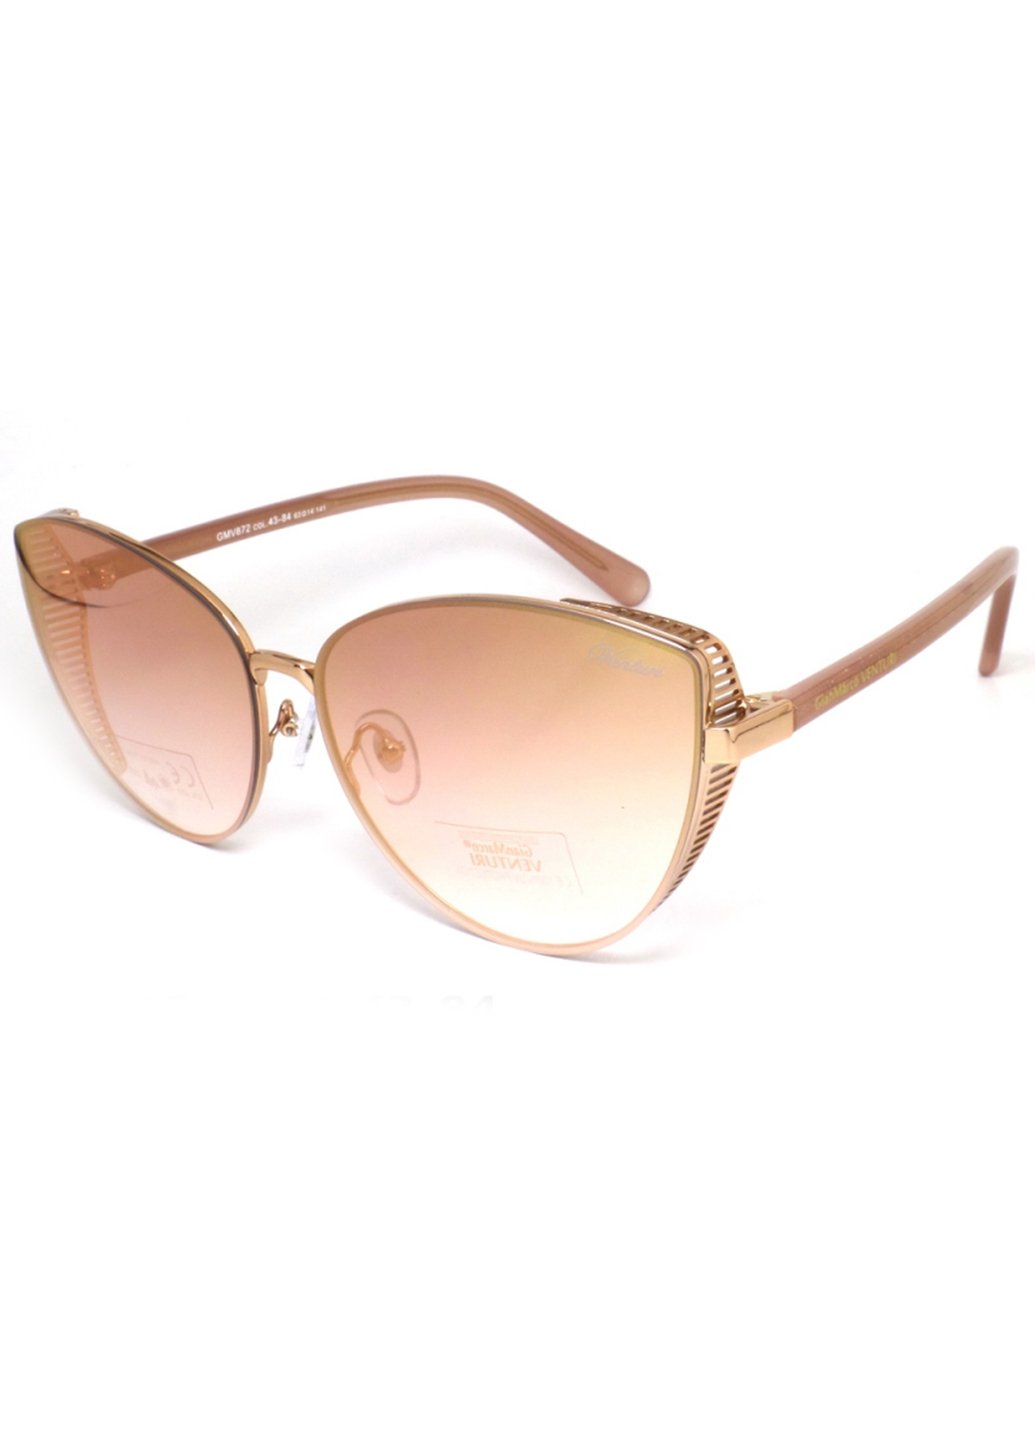 Купить Женские солнцезащитные очки Gian Marco VENTURI GMV872 130007 - Розовый в интернет-магазине